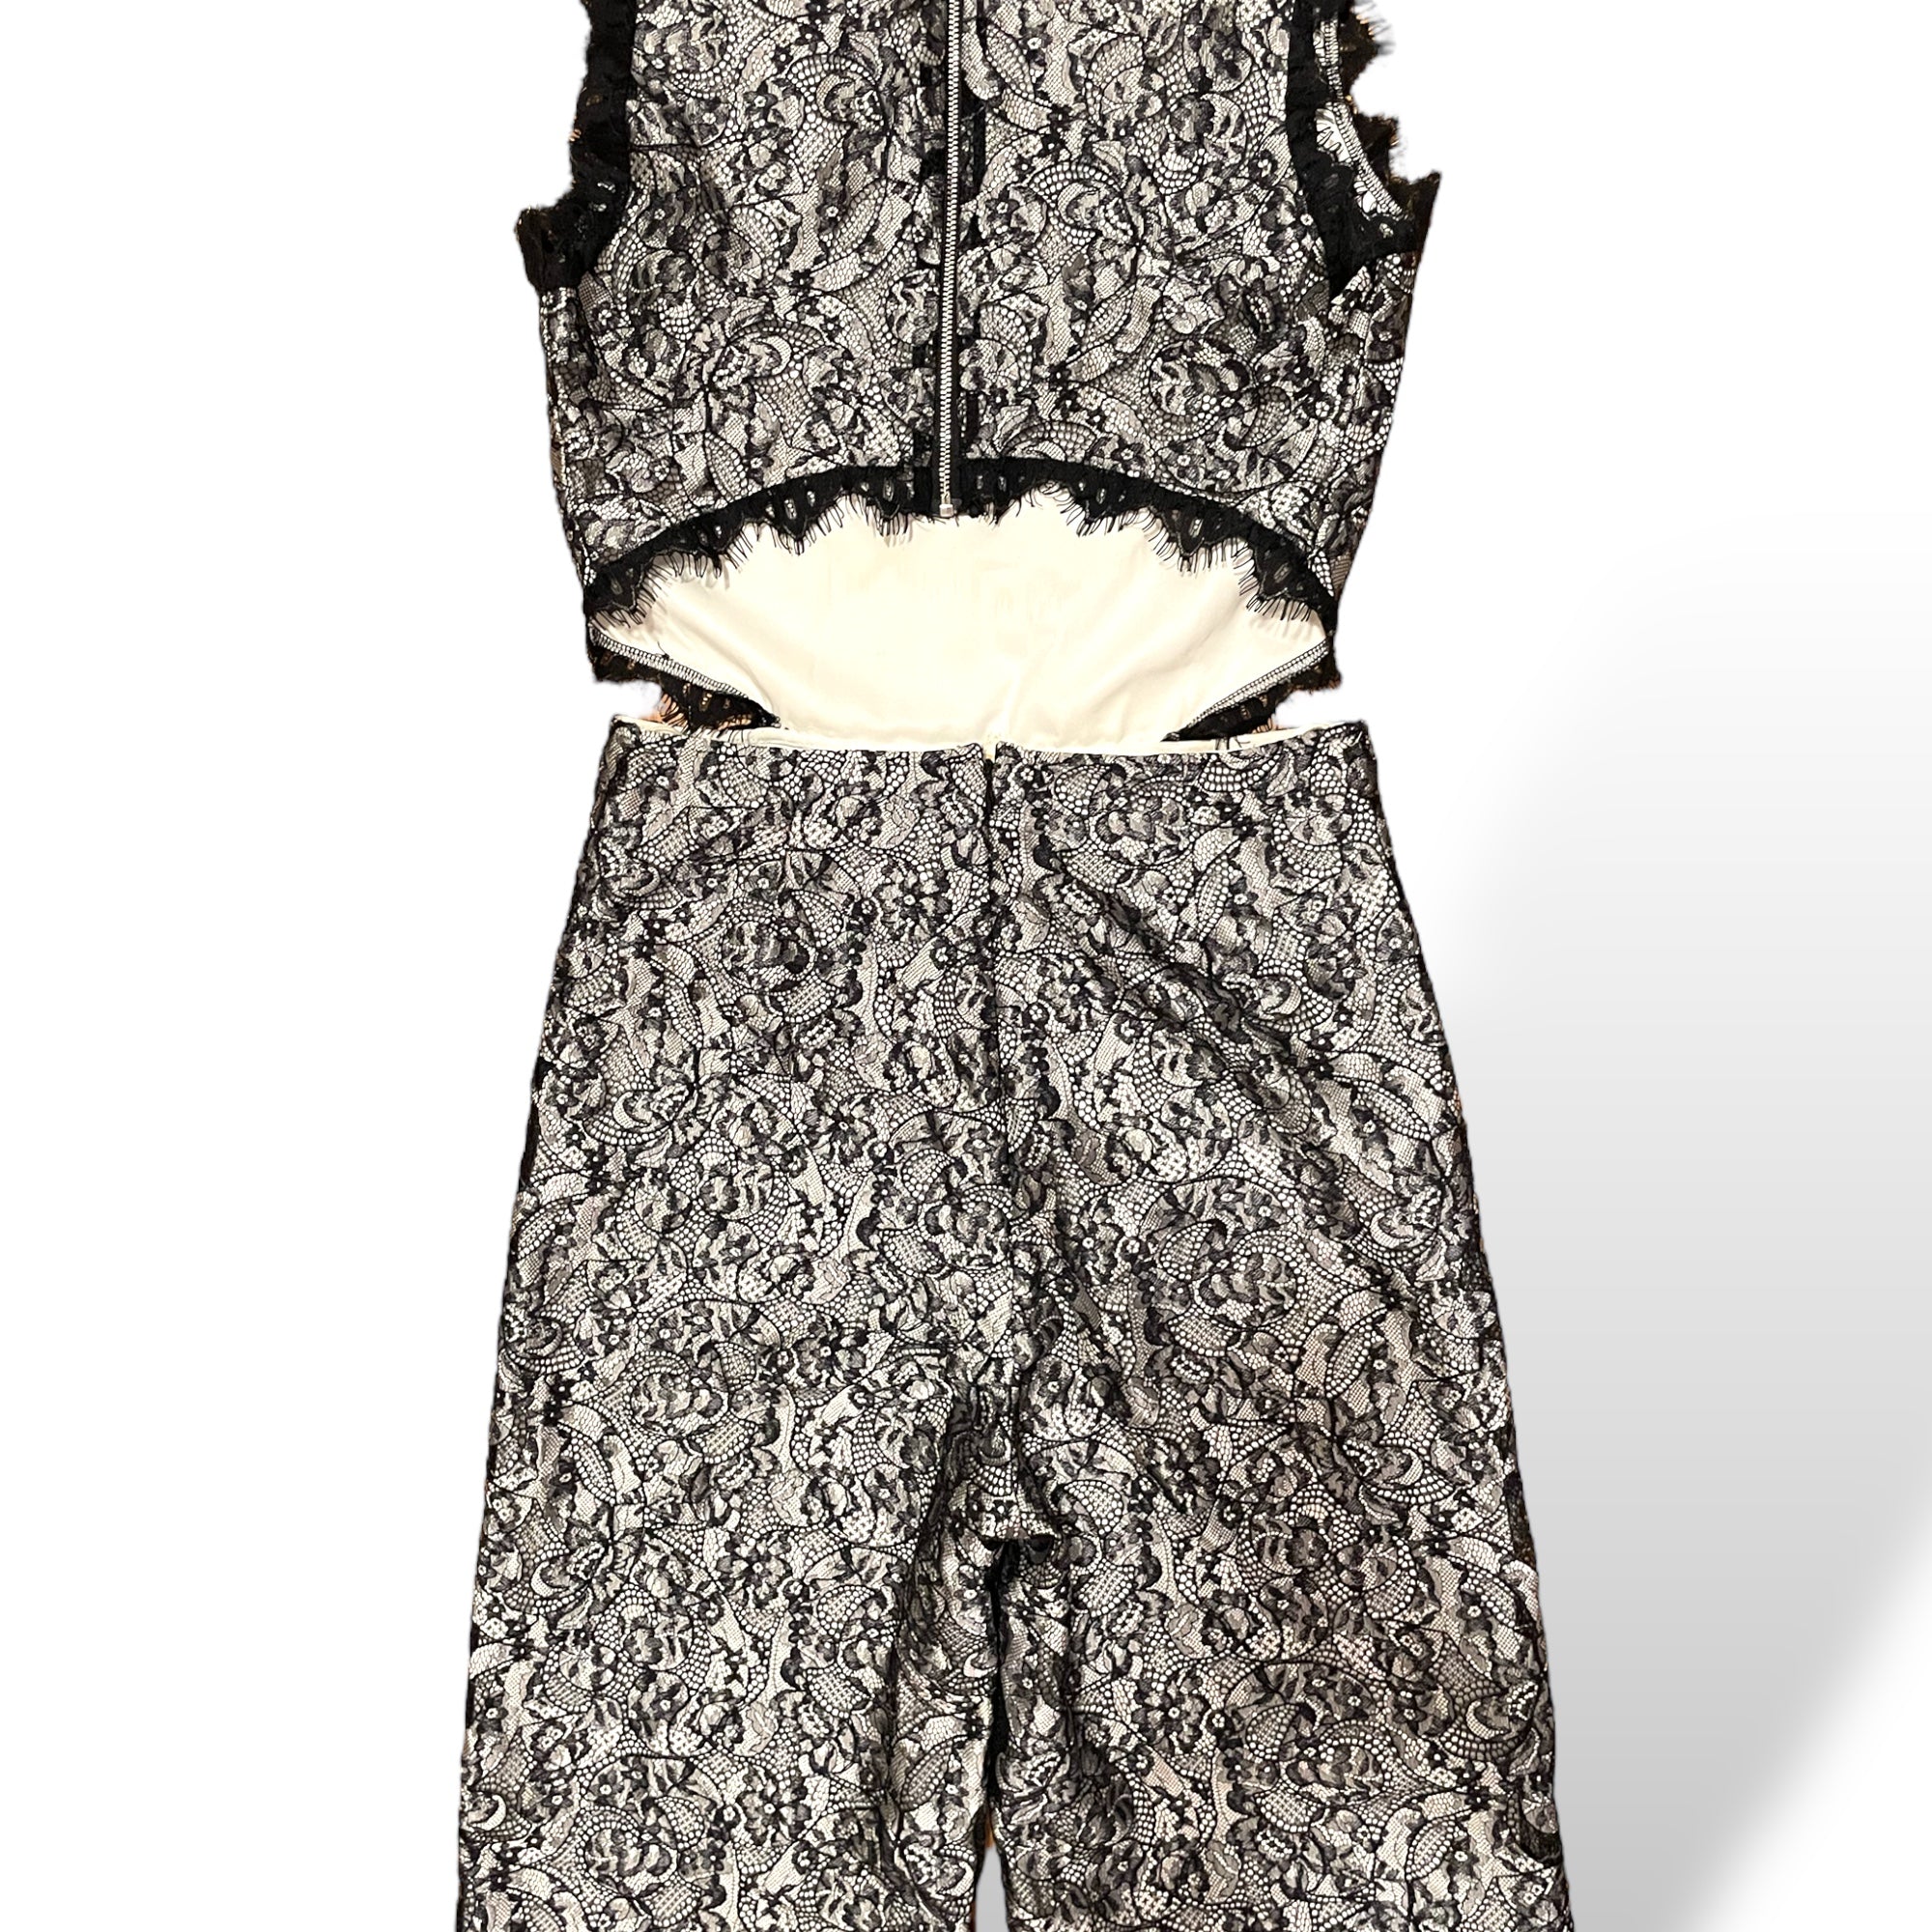 ALEXIS Black Lace & White Cut Out Jumpsuit  |Size:Medium|